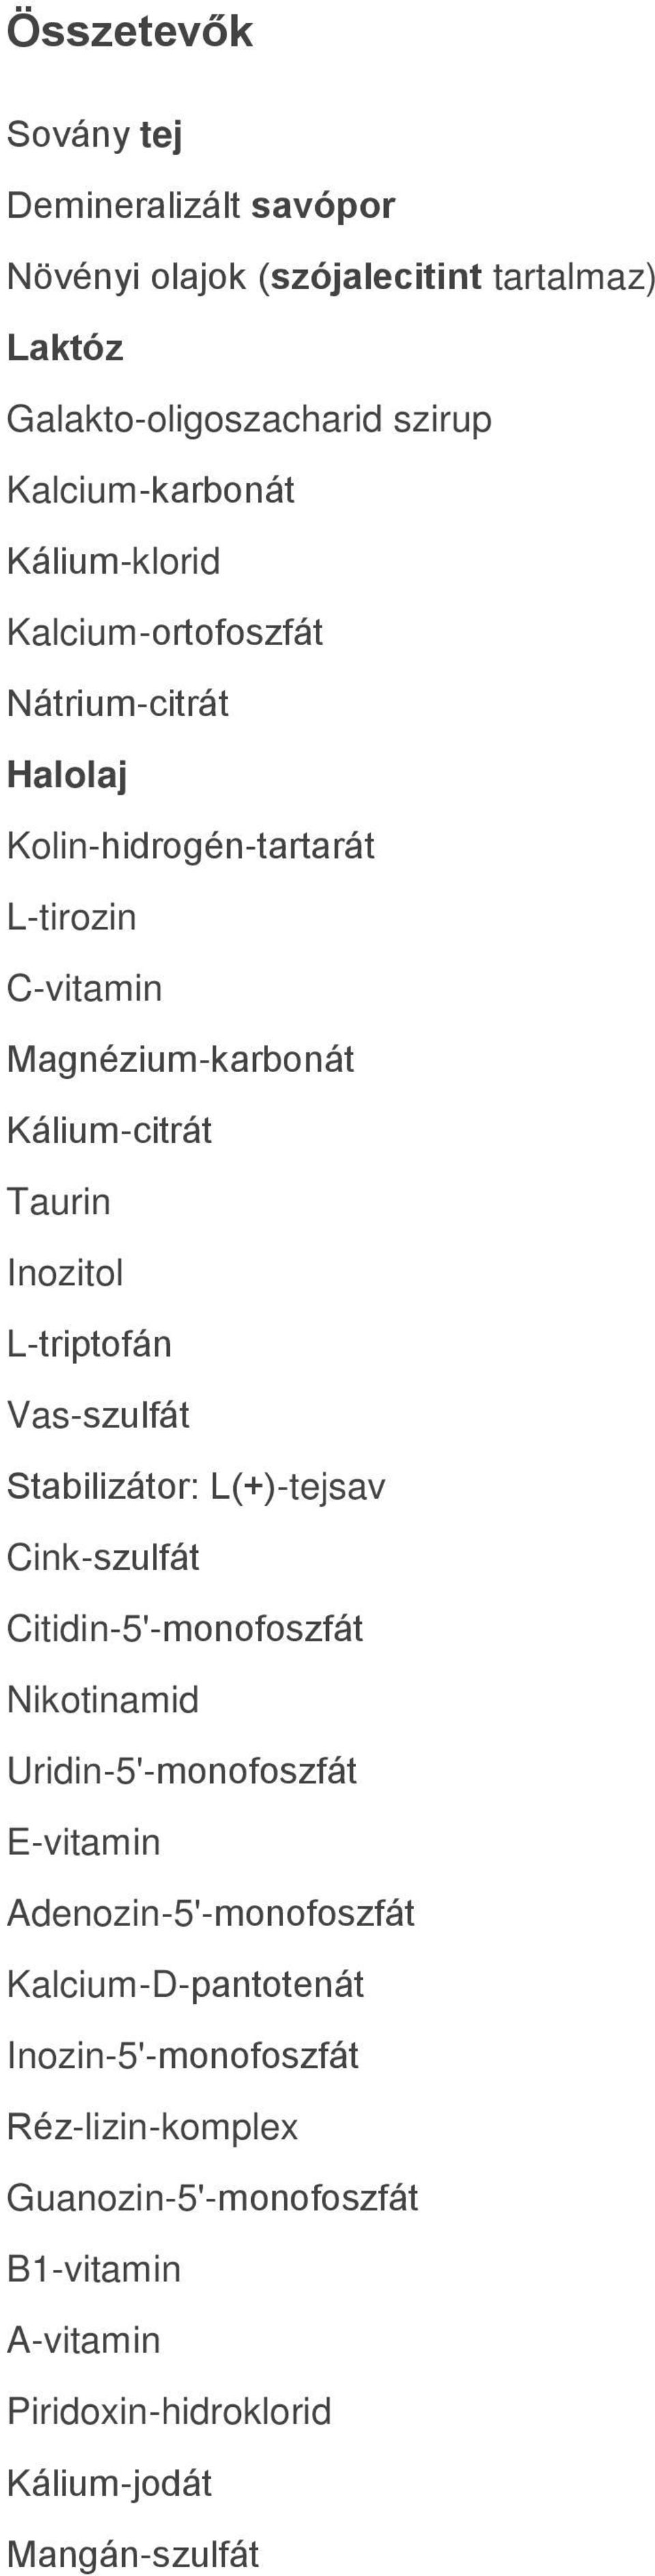 L-triptofán Vas-szulfát Stabilizátor: L(+)-tejsav Cink-szulfát Citidin-5'-monofoszfát Nikotinamid Uridin-5'-monofoszfát E-vitamin